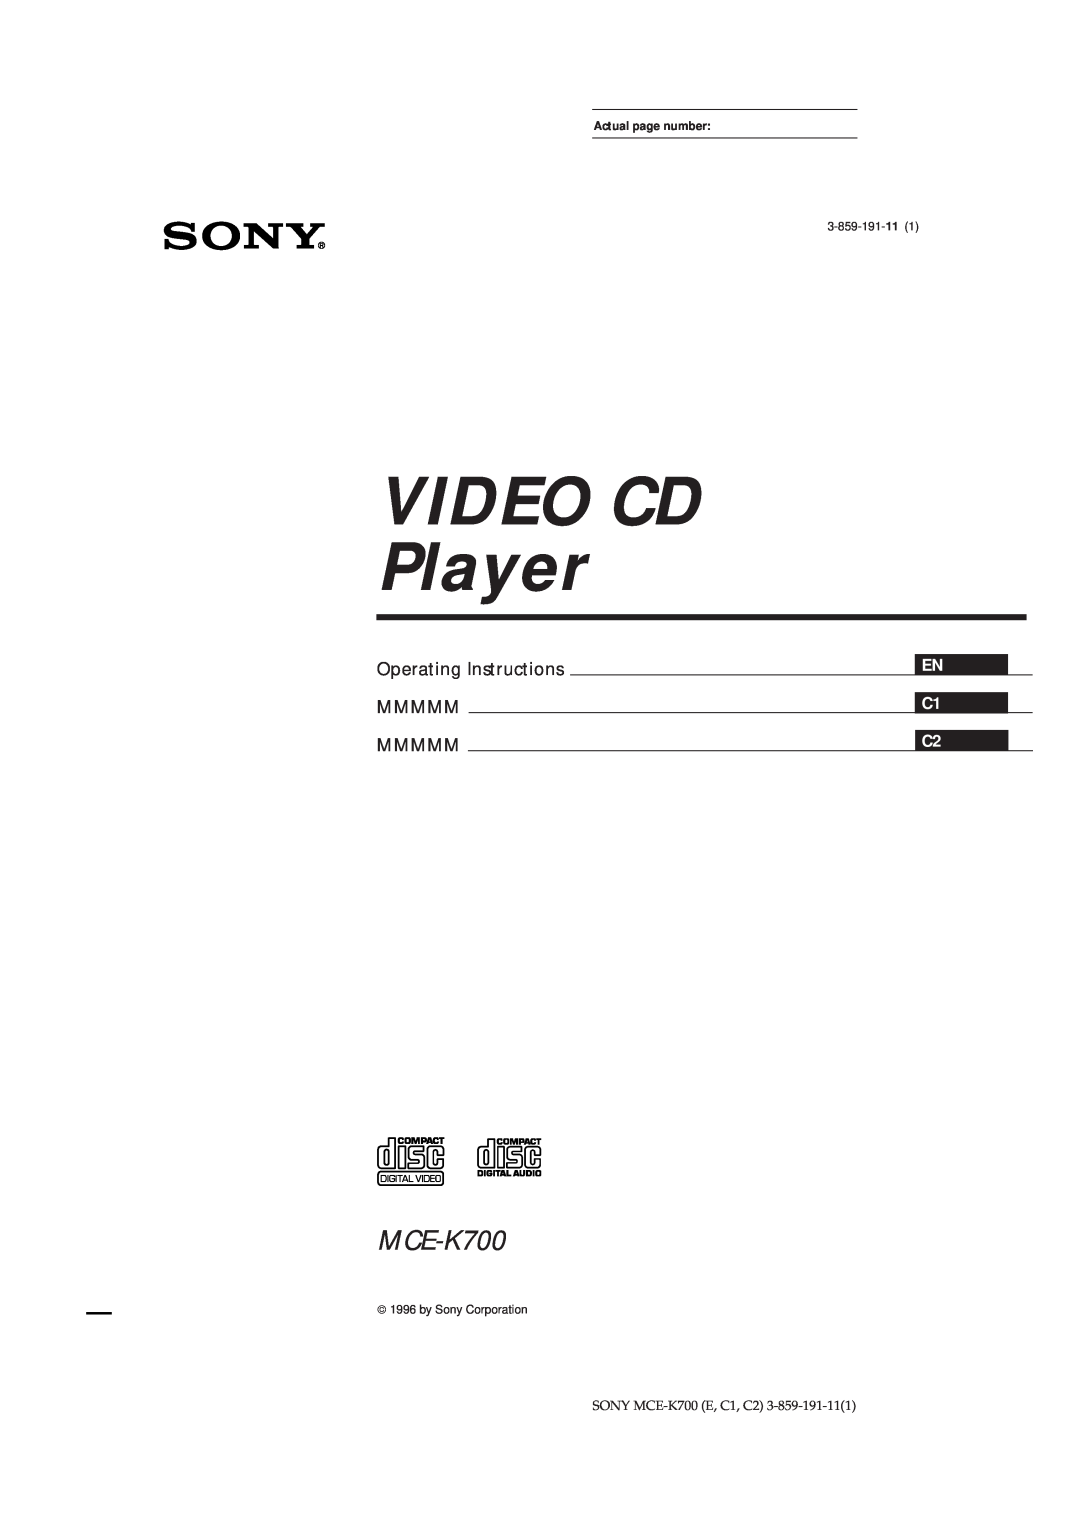 Sony MCE-K700 manual EN C1 C2, VIDEO CD Player, Operating Instructions MMMMM MMMMM, 3-859-191-11, by Sony Corporation 